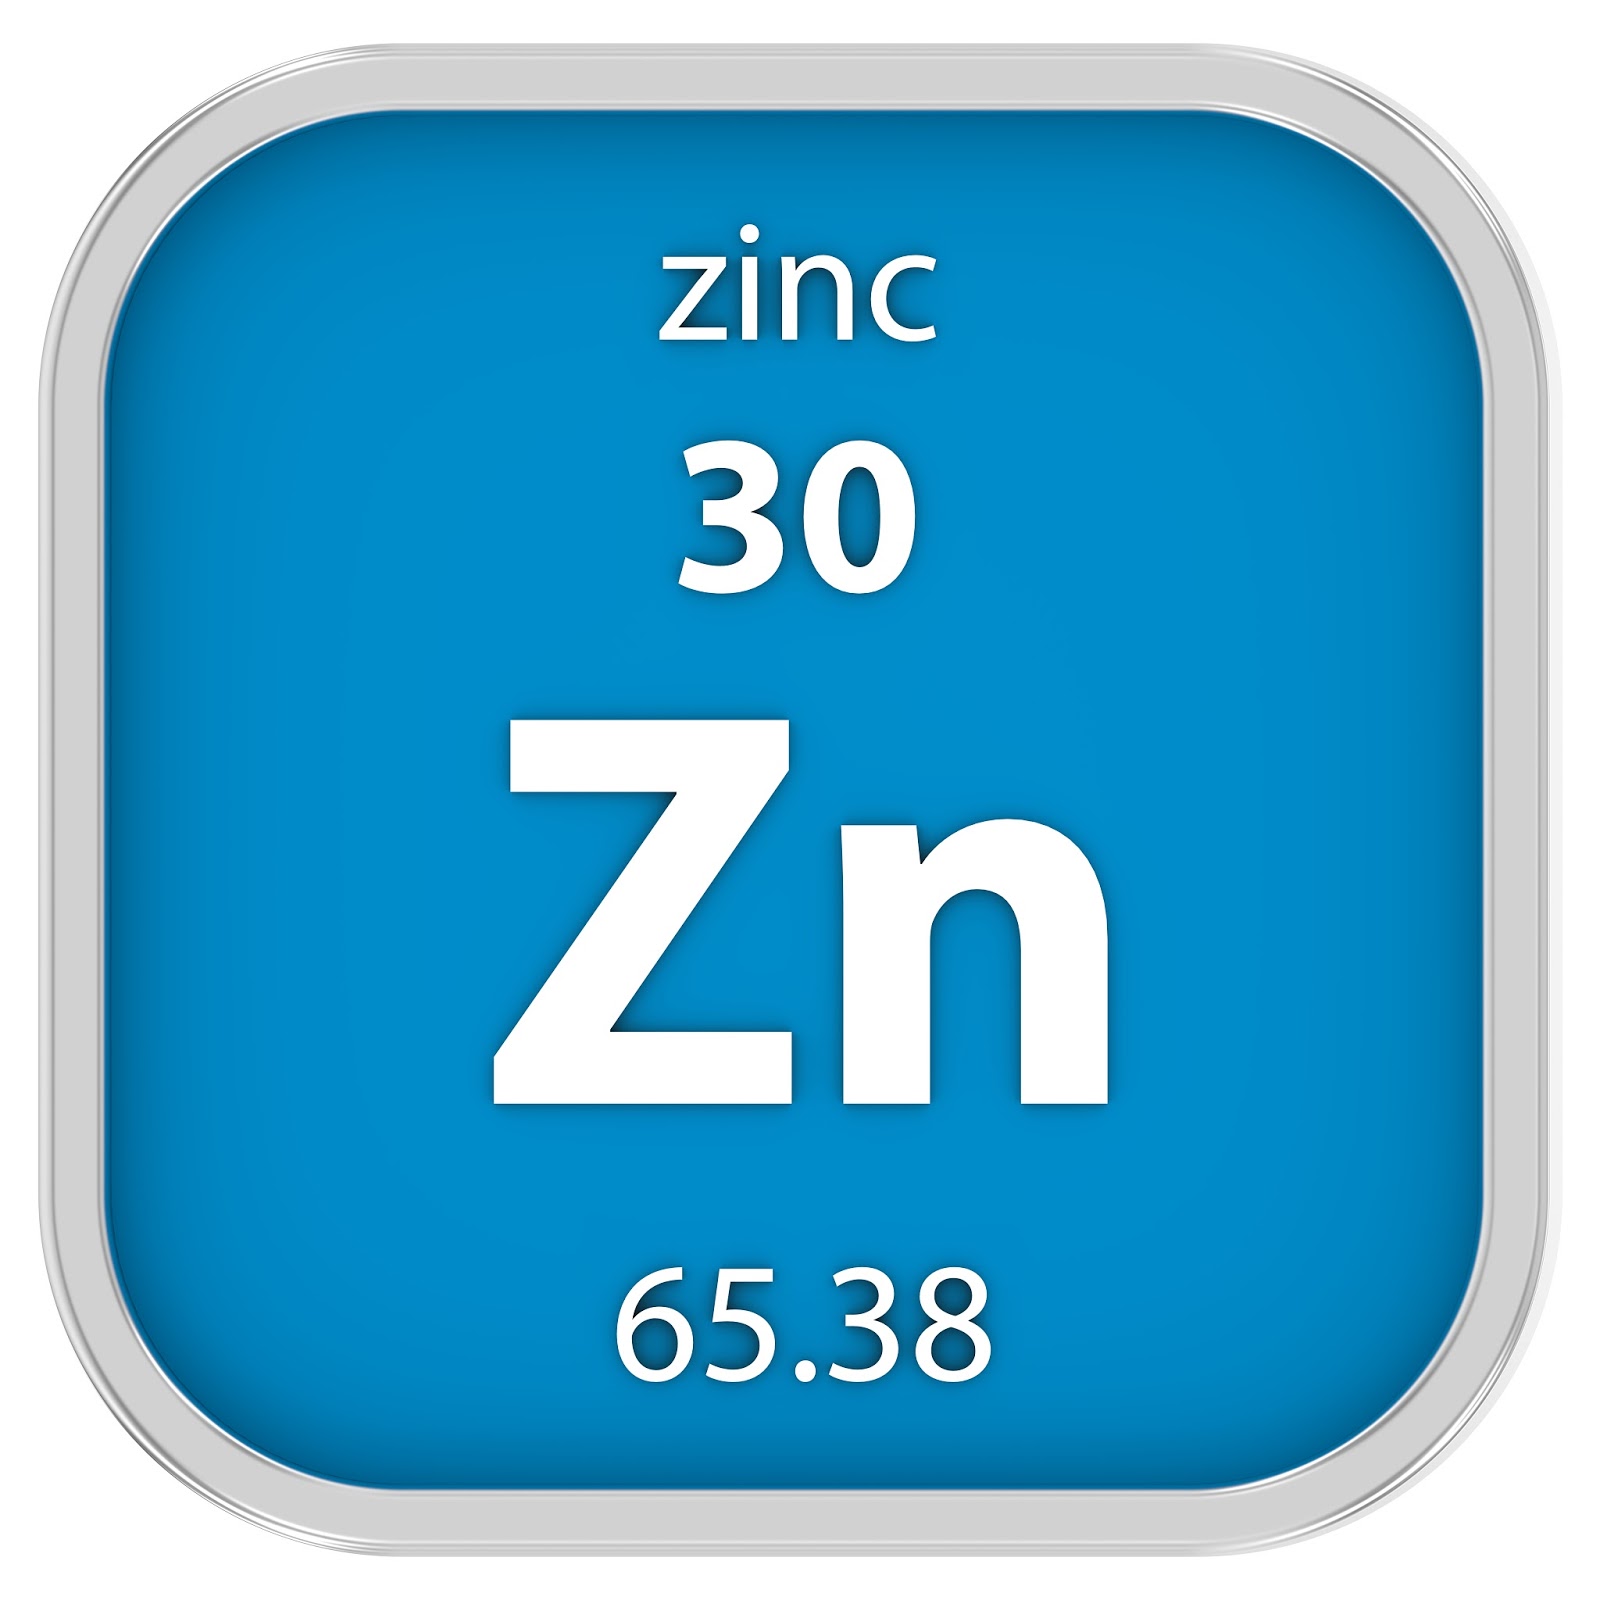 Знак zn. Цинк элемент. Цинк химический элемент. Химический знак цинка. Цинк в таблице Менделеева.